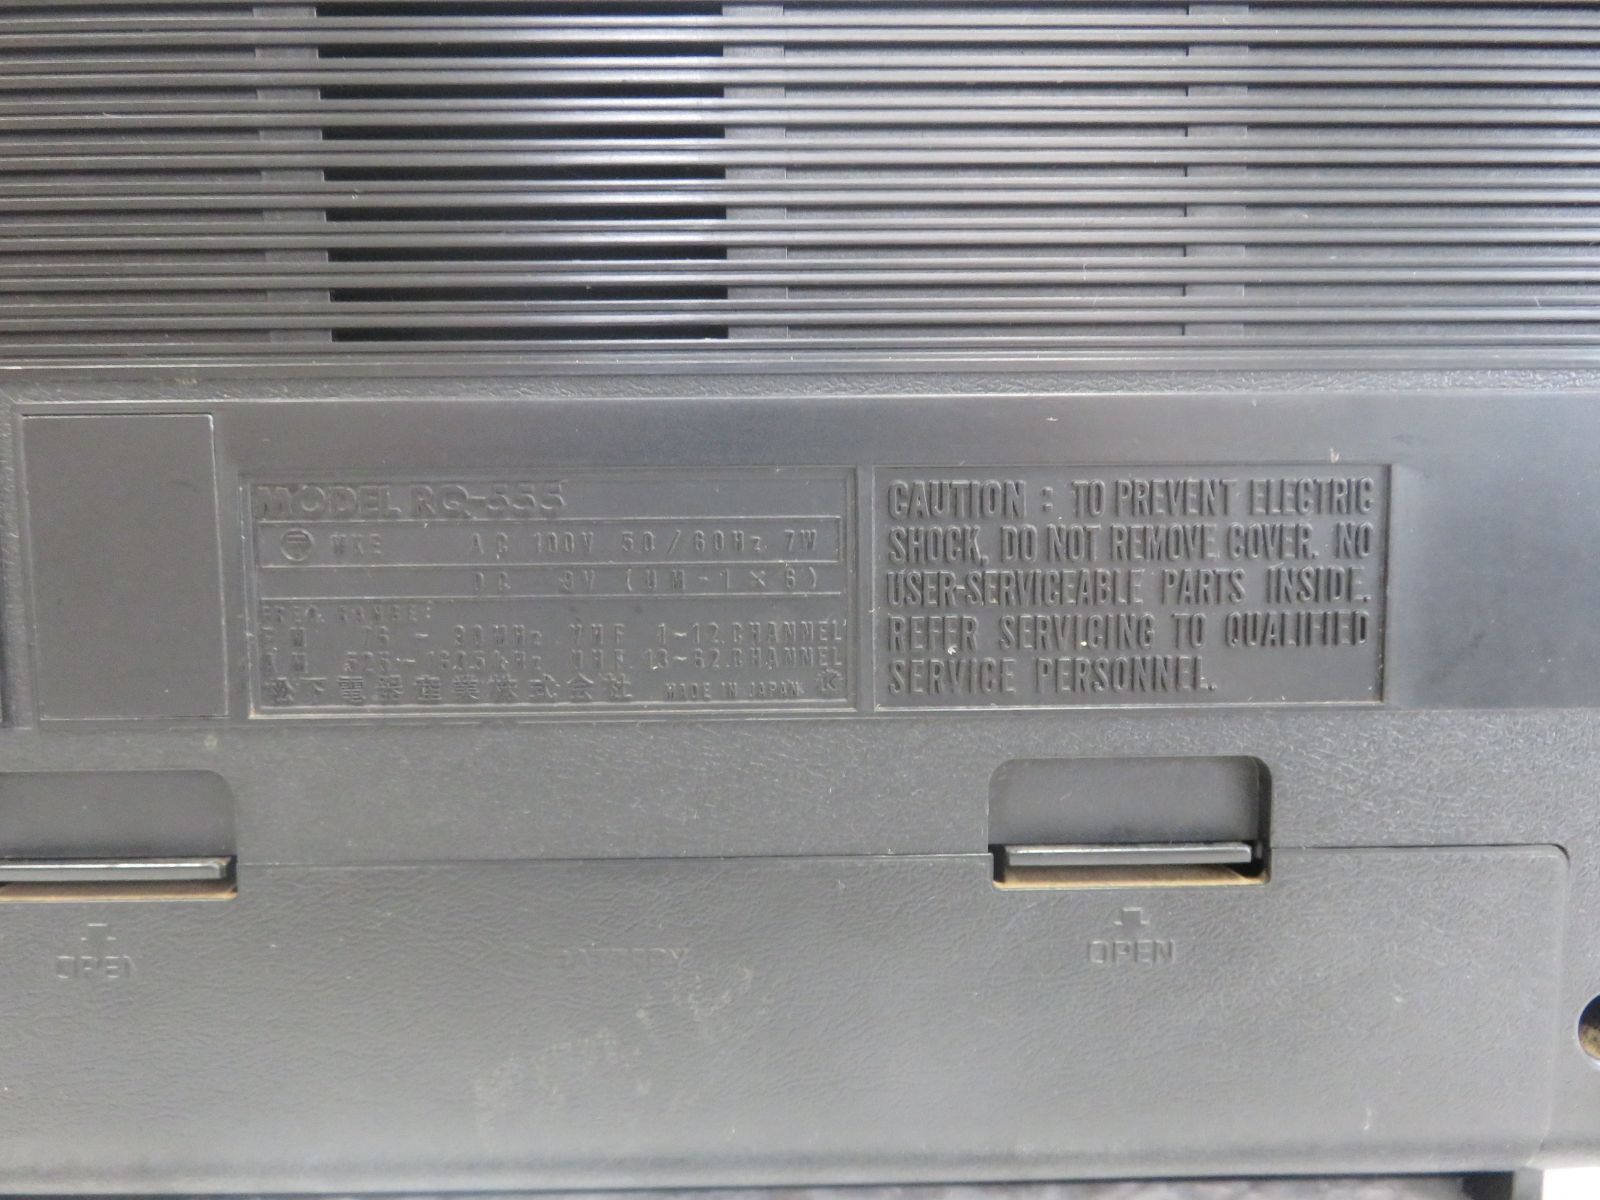 送料込み ラジオカセットレコーダー RQ-555 National ジャンク品 - メルカリ